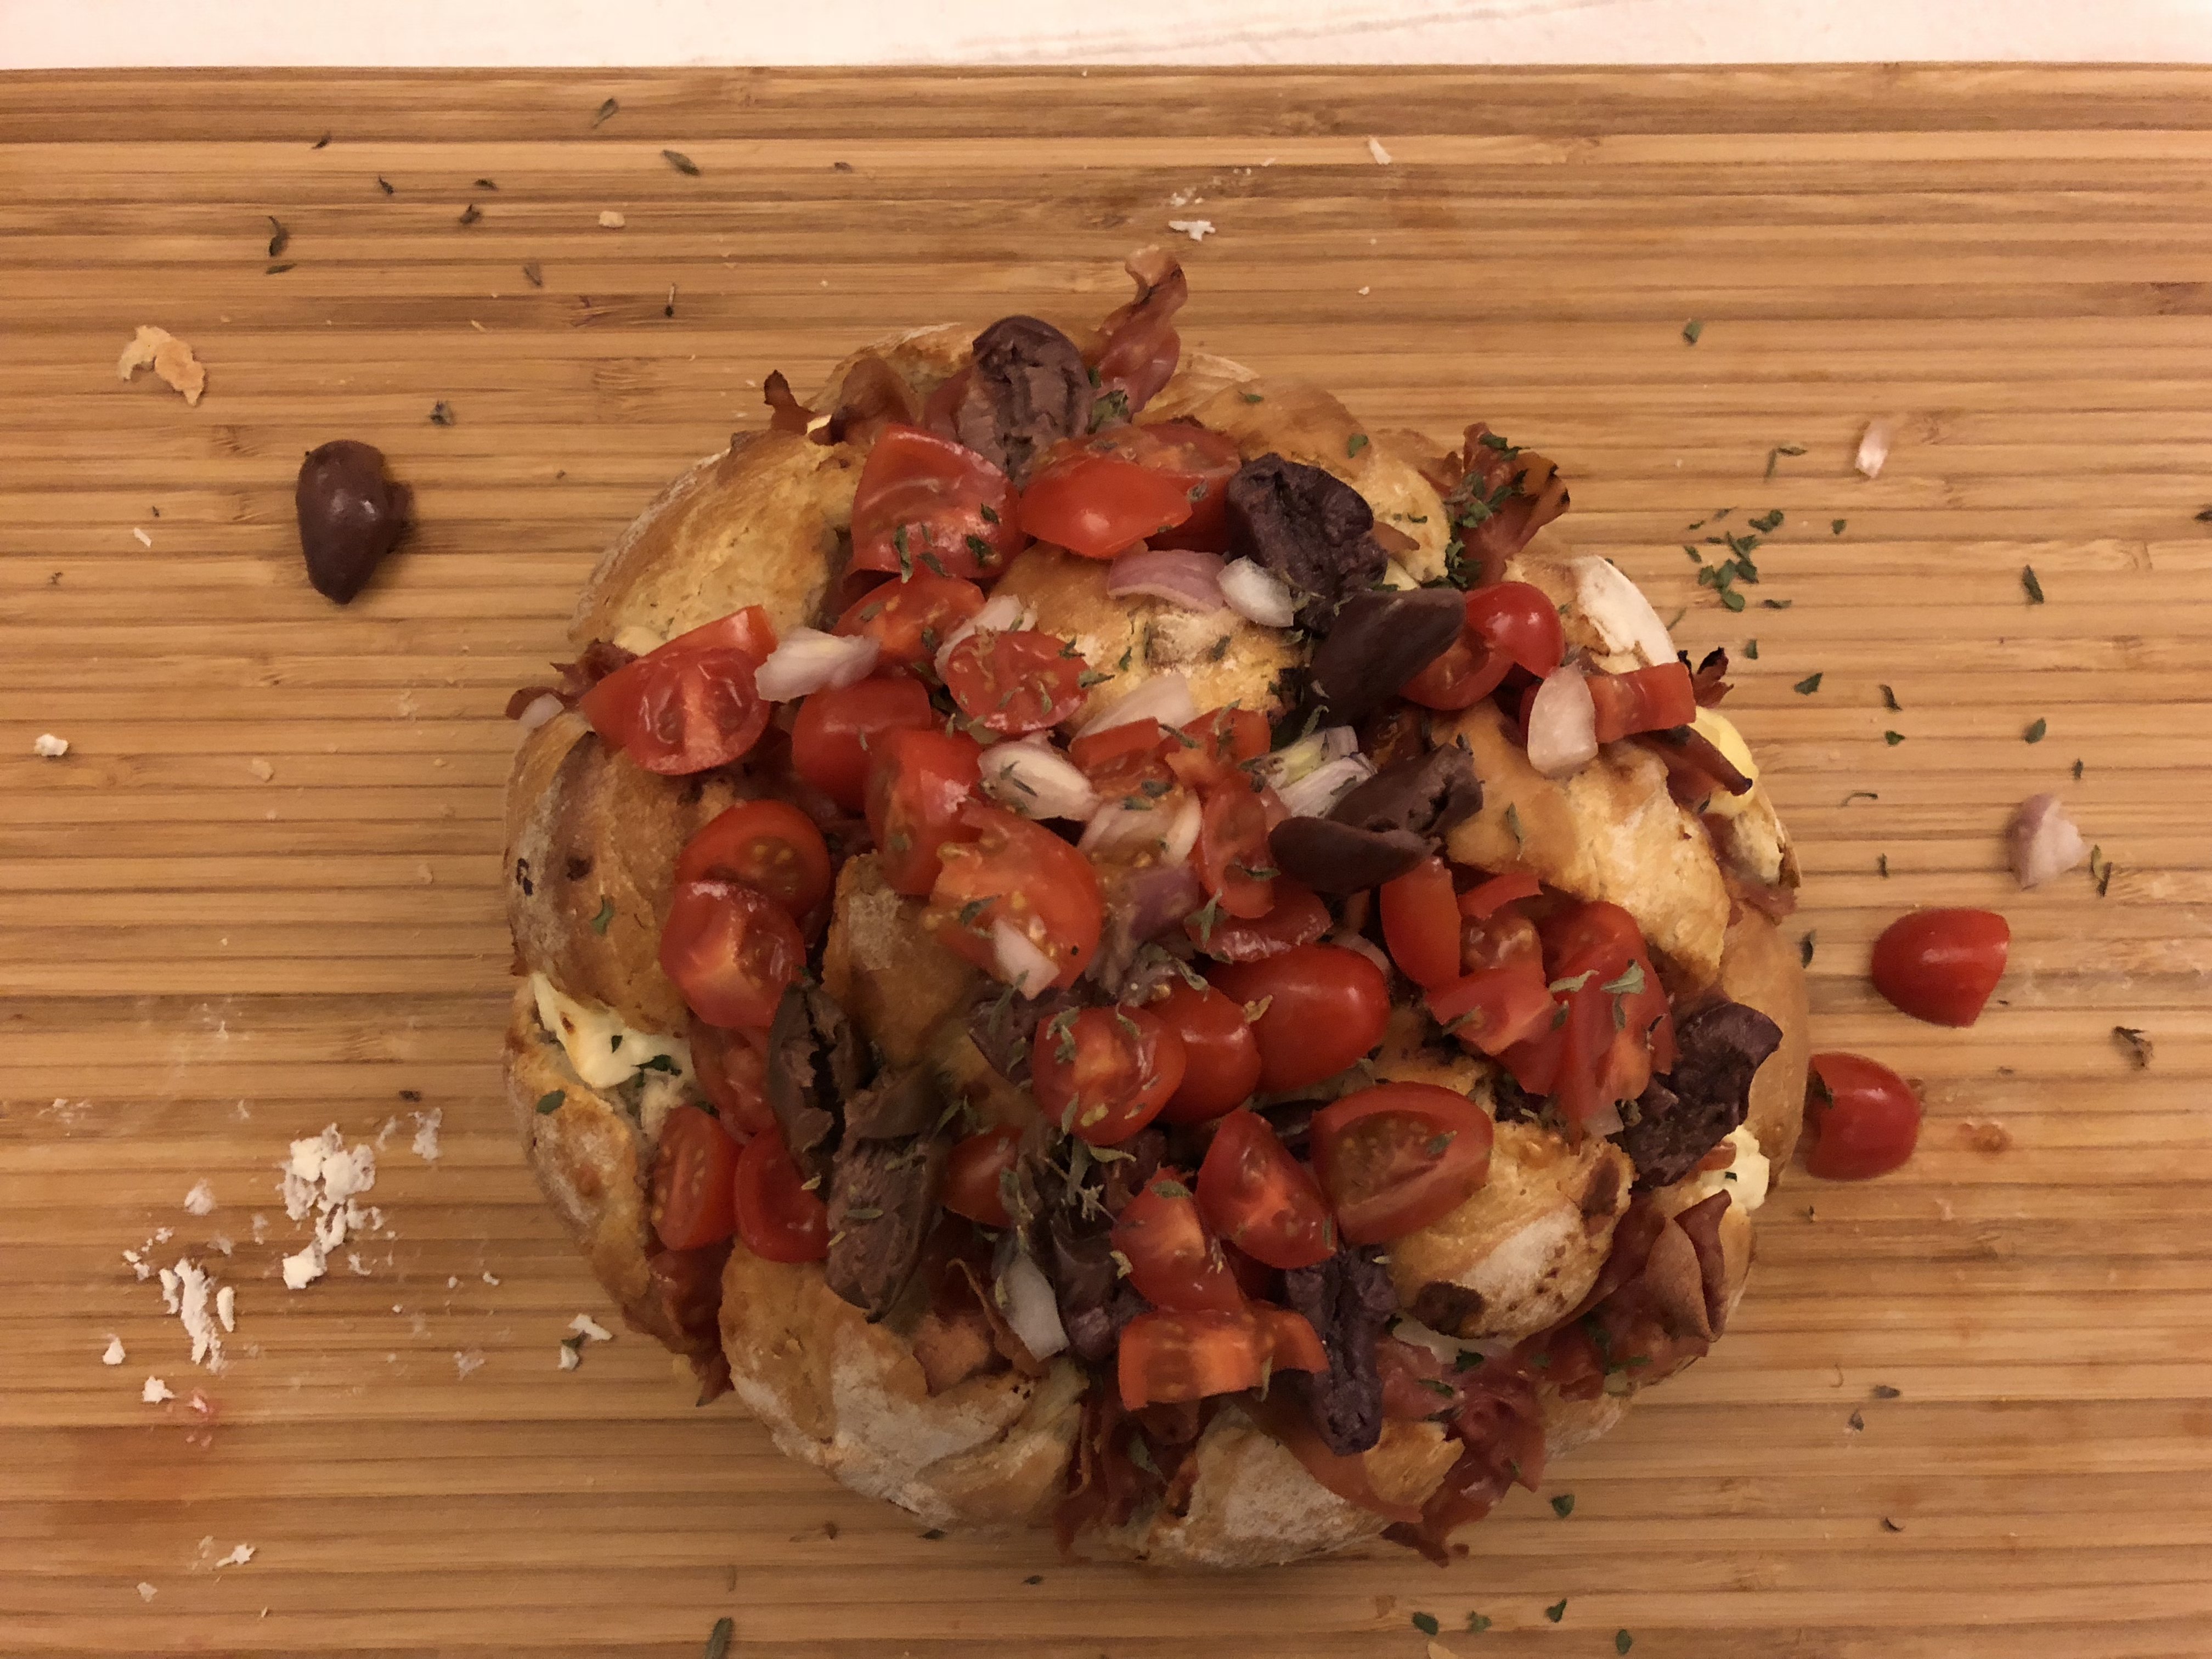 The Greek Pizza Bread – Pull apart